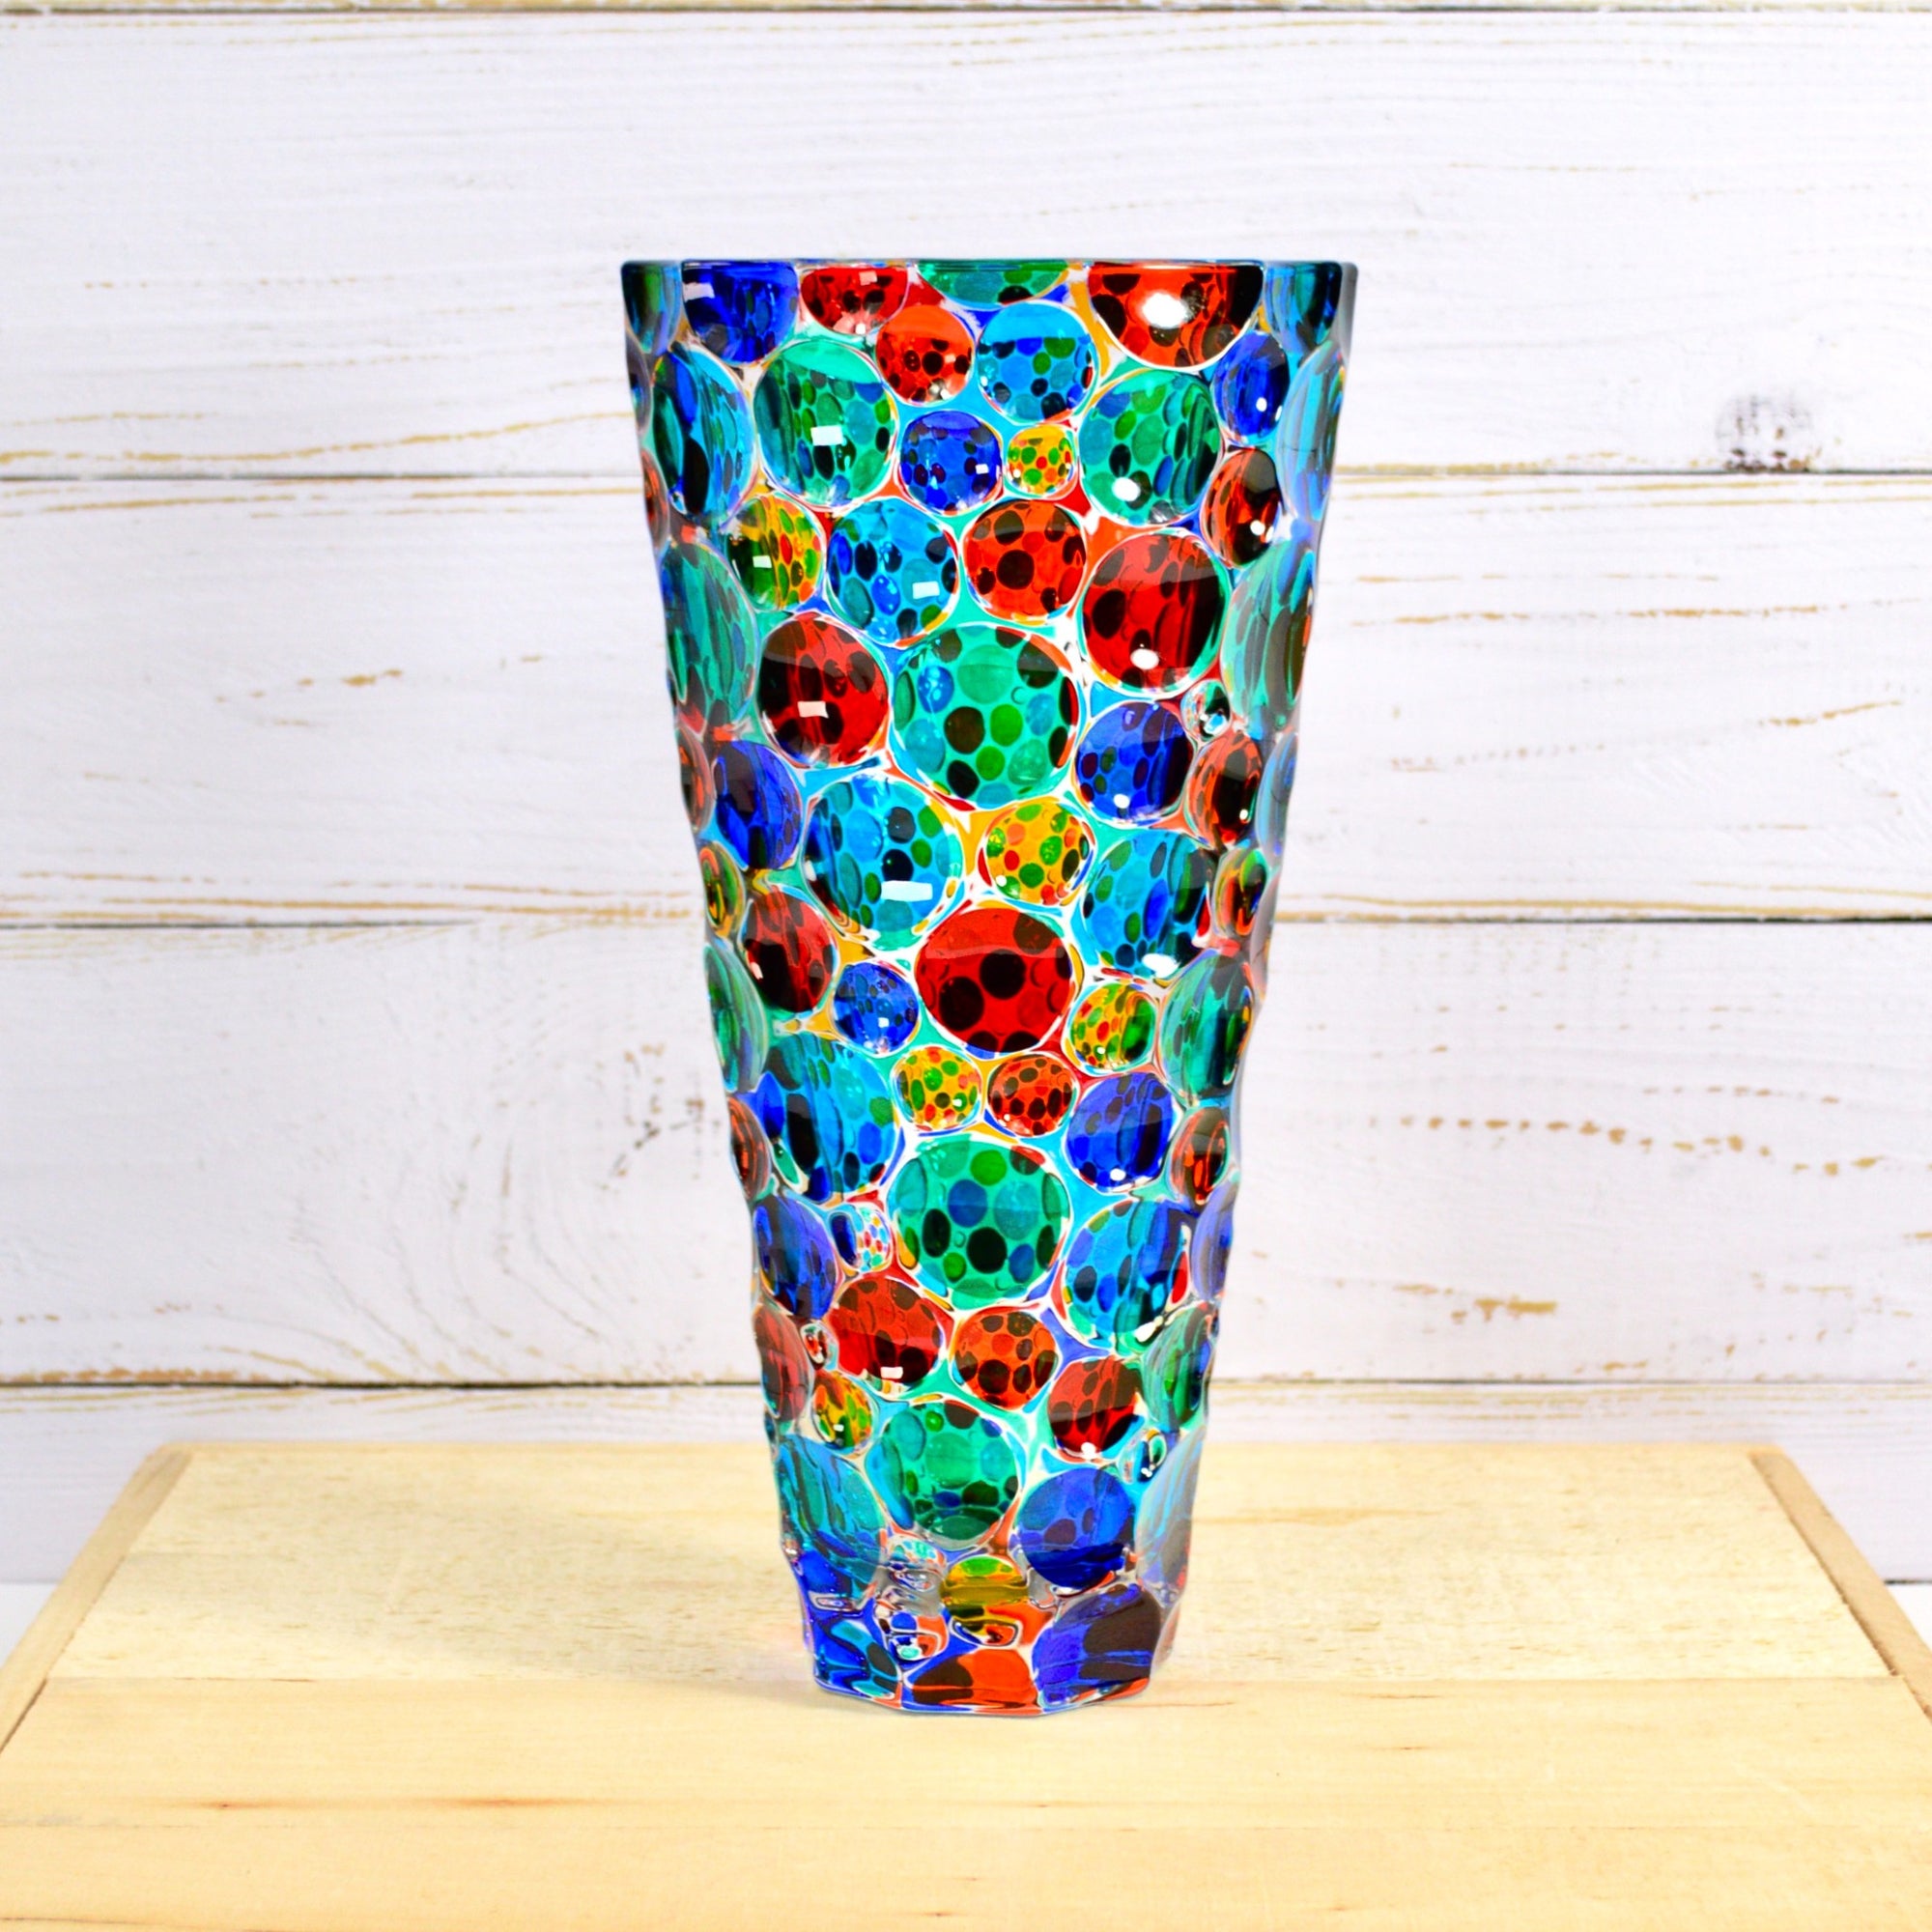 Lisboa Conico Vase, Hand Painted Crystal, Made in Italy - My Italian Decor